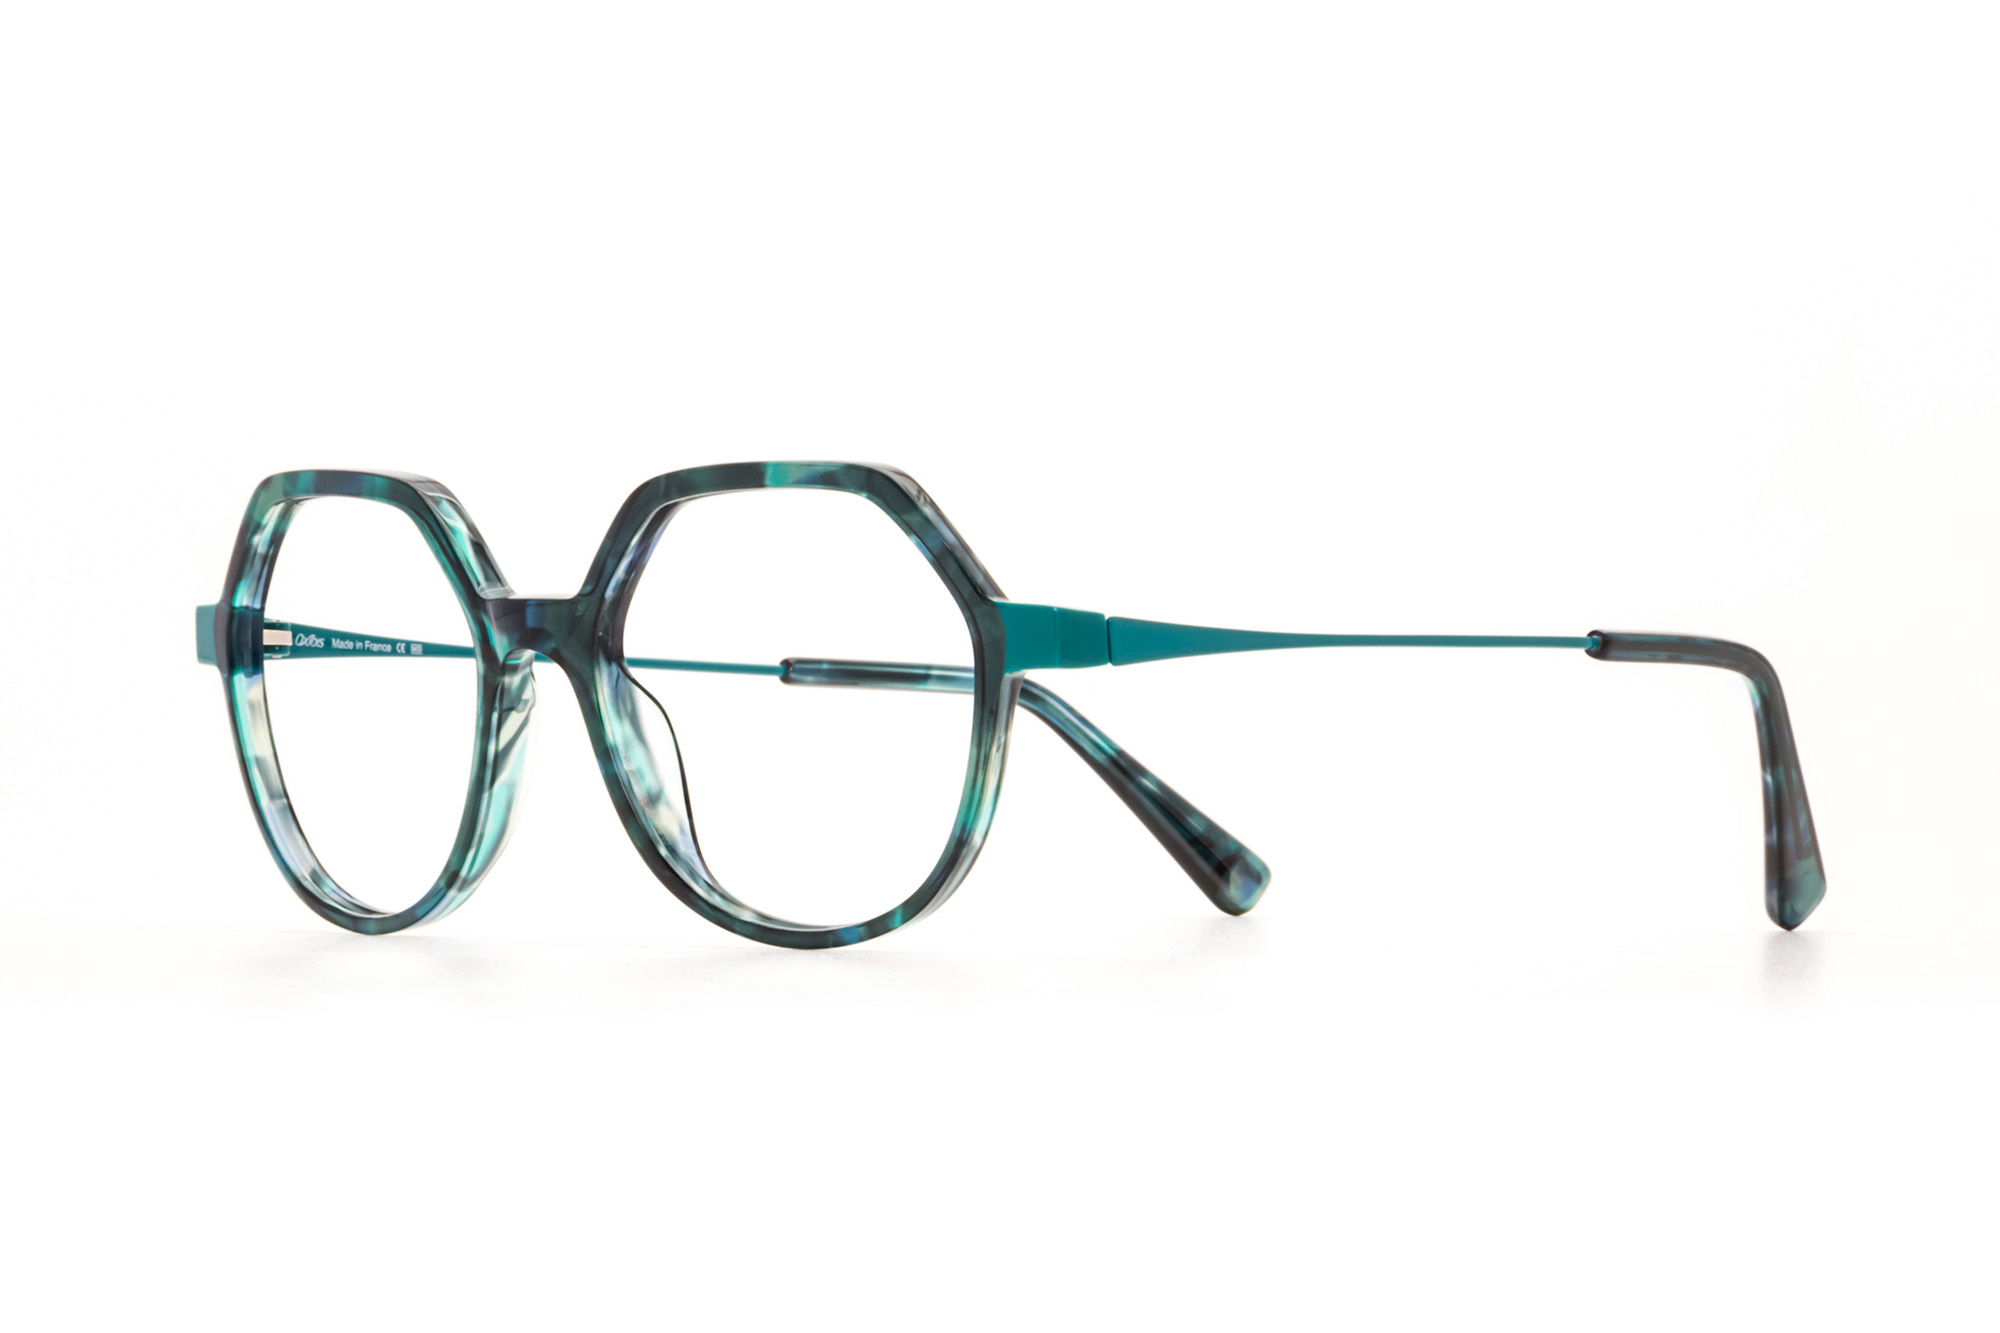 Kullanıma hazır optik tarzda işlenmiş camları ve optik uyumlu çerçevesiyle Oxibis Tango TA3C1 orta ekartman mavi-yeşil ve lacivert renkli yuvarlak model kadın gözlüğünü optisyen veya gözlükçülerin sunacağı numarasız veya numaralı cam özelleştirmeleriyle size en yakın gözlükçüden satın alabilirsiniz.